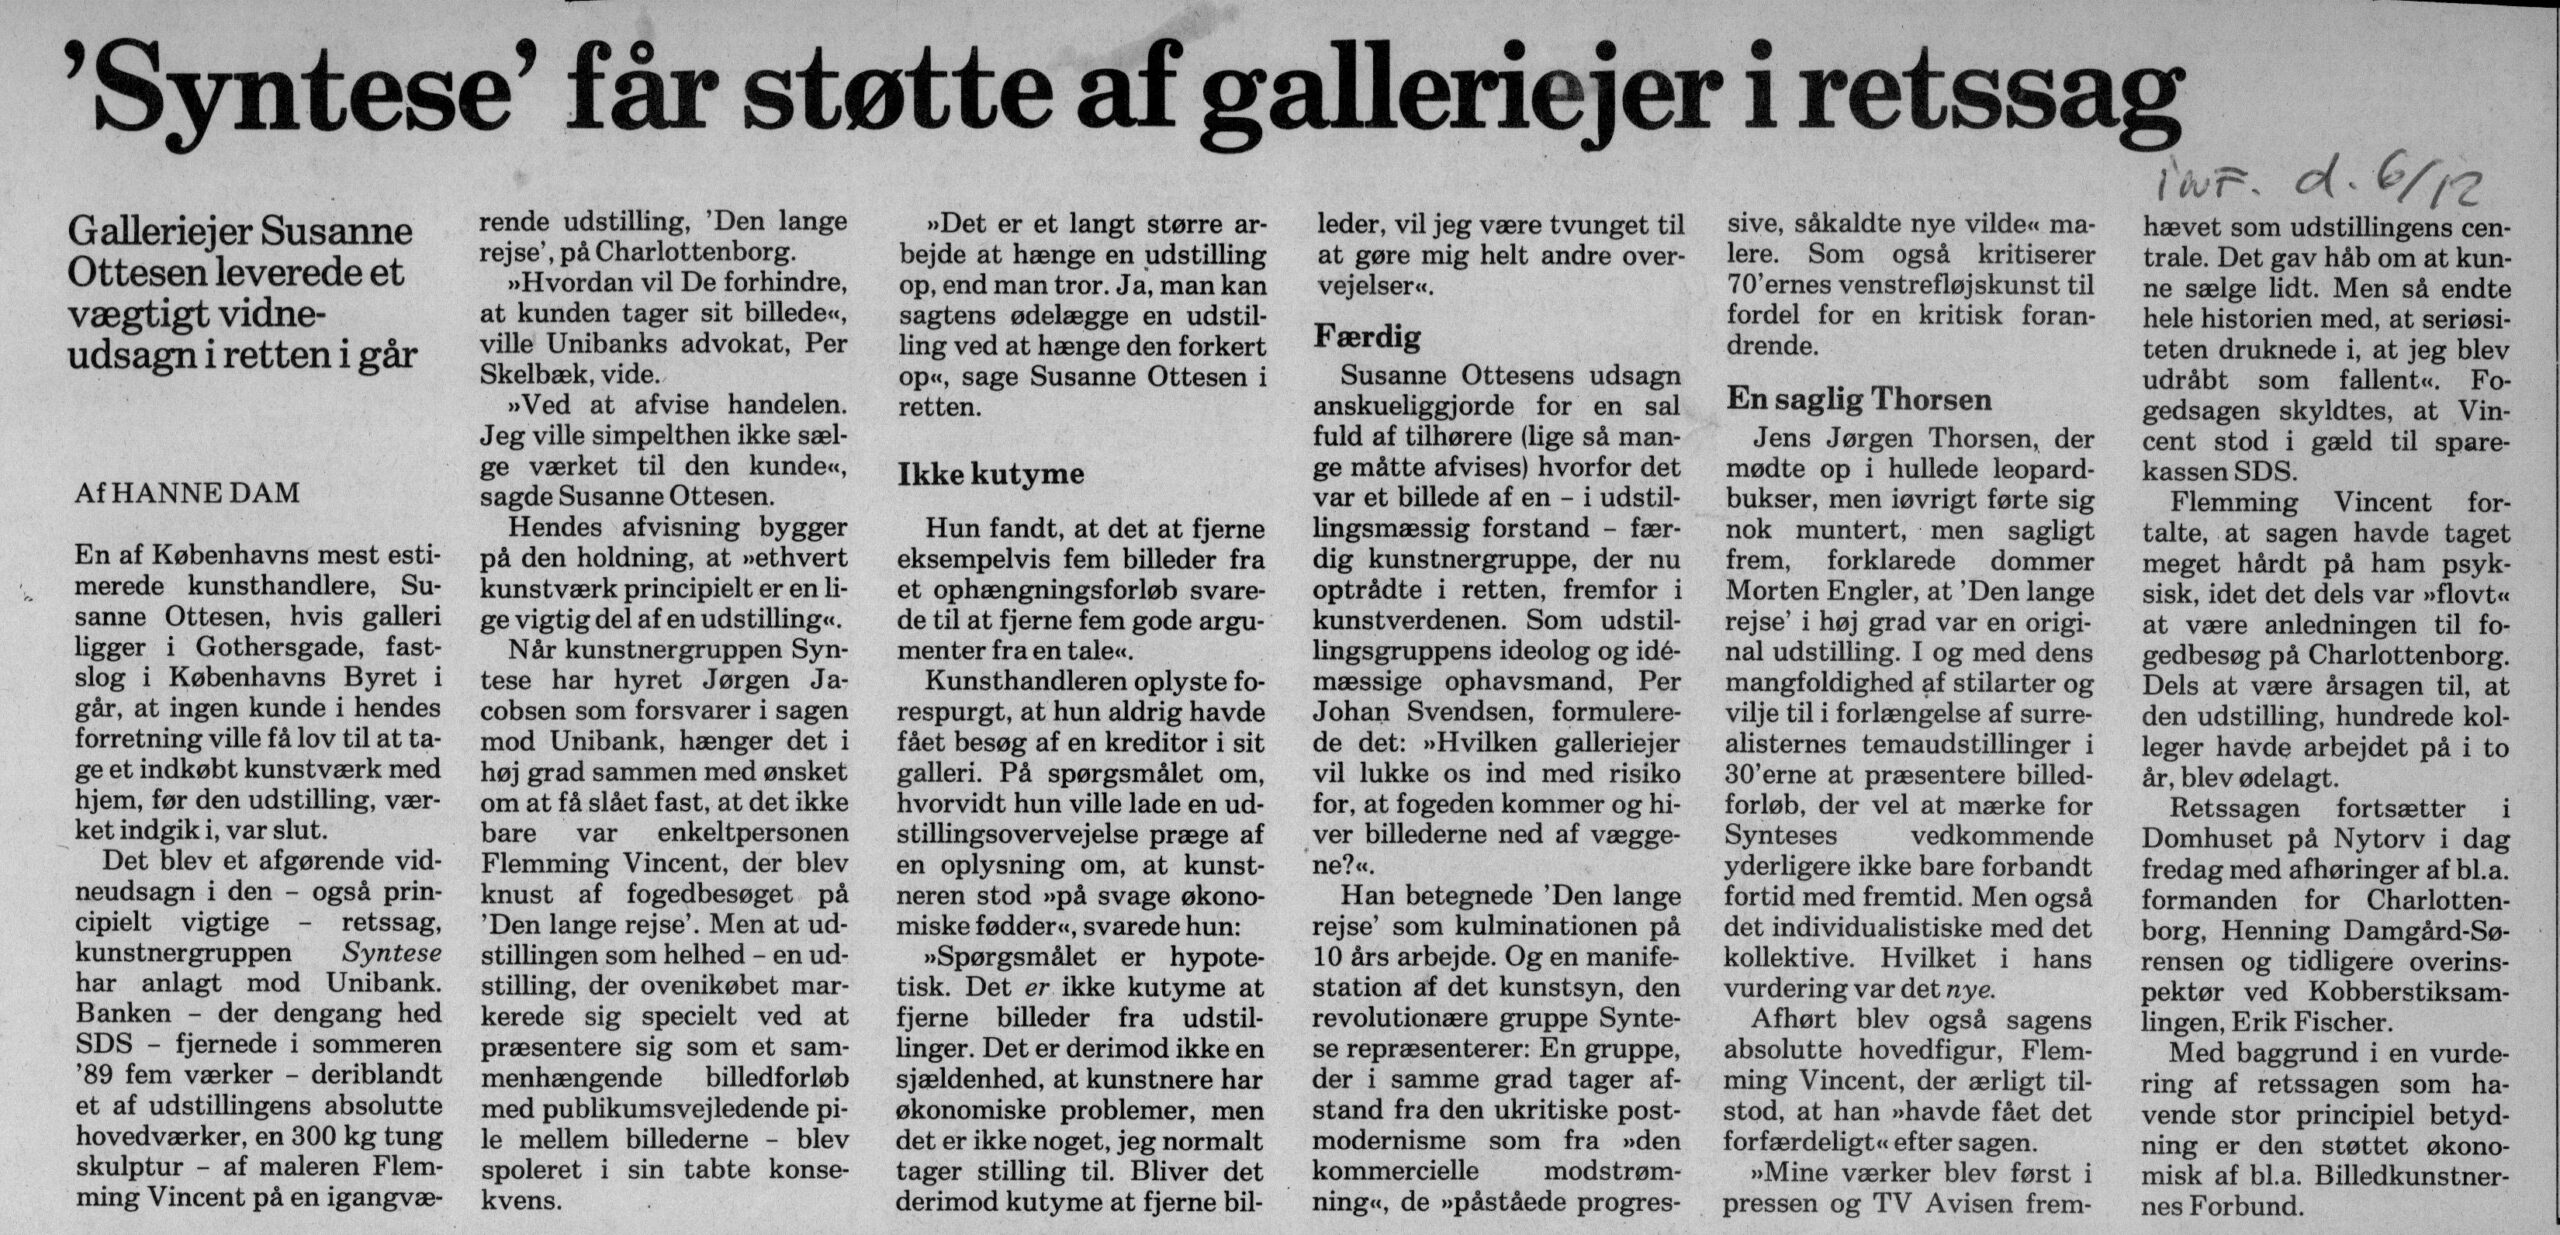 ‘Syntese’ får støtte af galleriejer i retssag. Omtale (Retssag. Den Lange rejse, Charlottenborg, København 1989). Hanne Dam. Information.